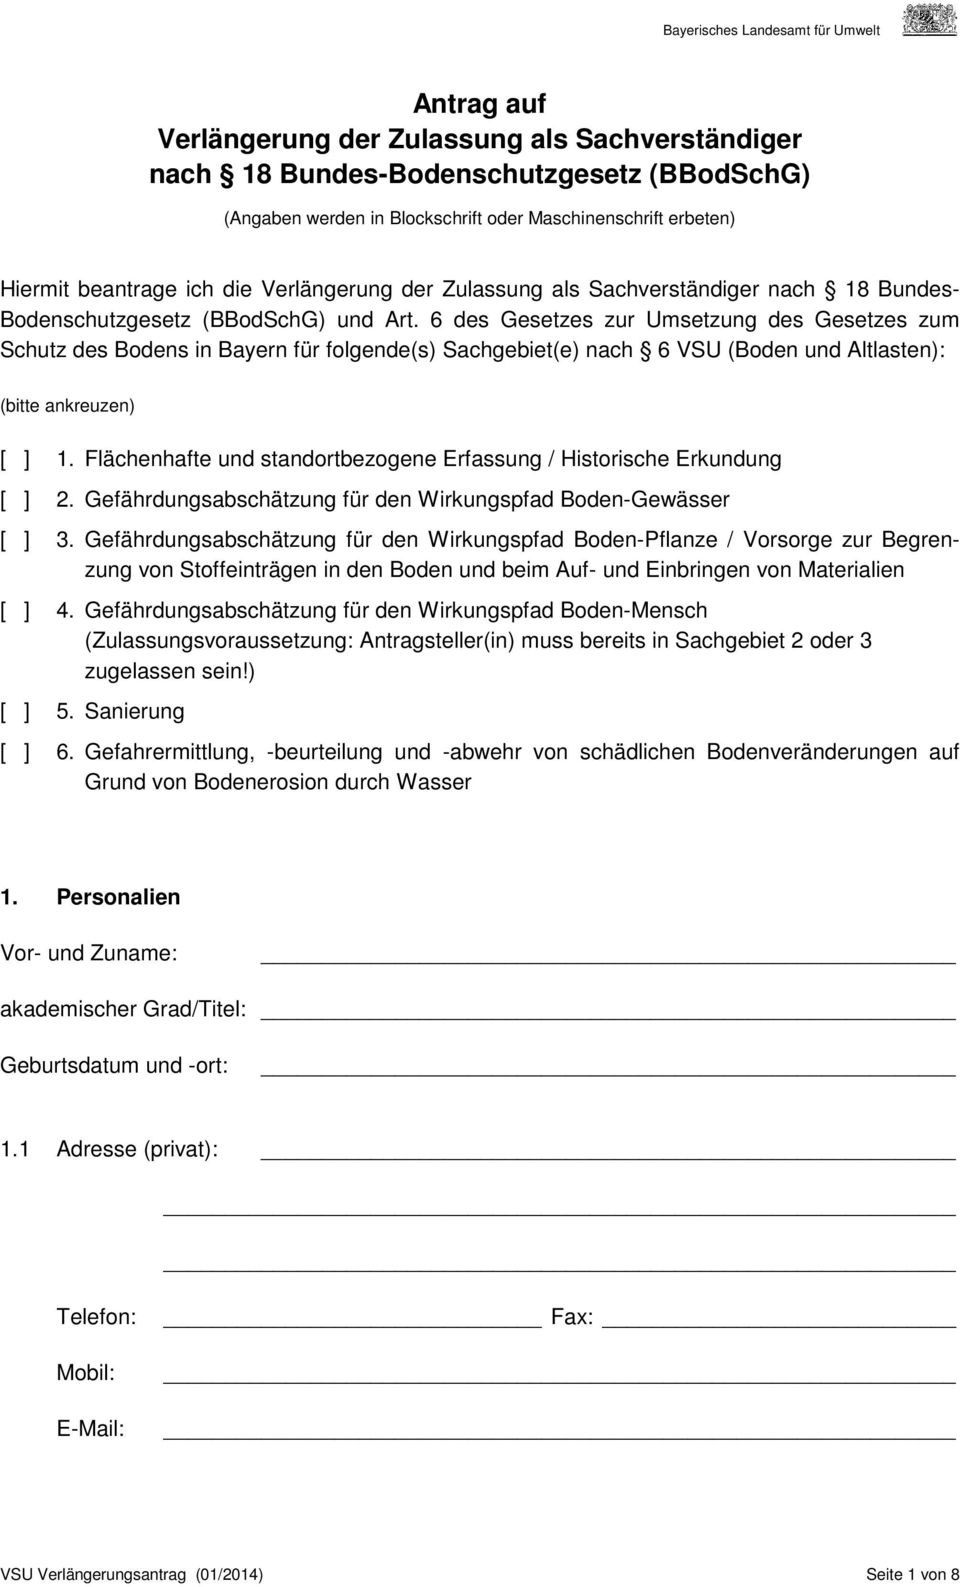 6 des Gesetzes zur Umsetzung des Gesetzes zum Schutz des Bodens in Bayern für folgende(s) Sachgebiet(e) nach 6 VSU (Boden und Altlasten): (bitte ankreuzen) [ ] 1.